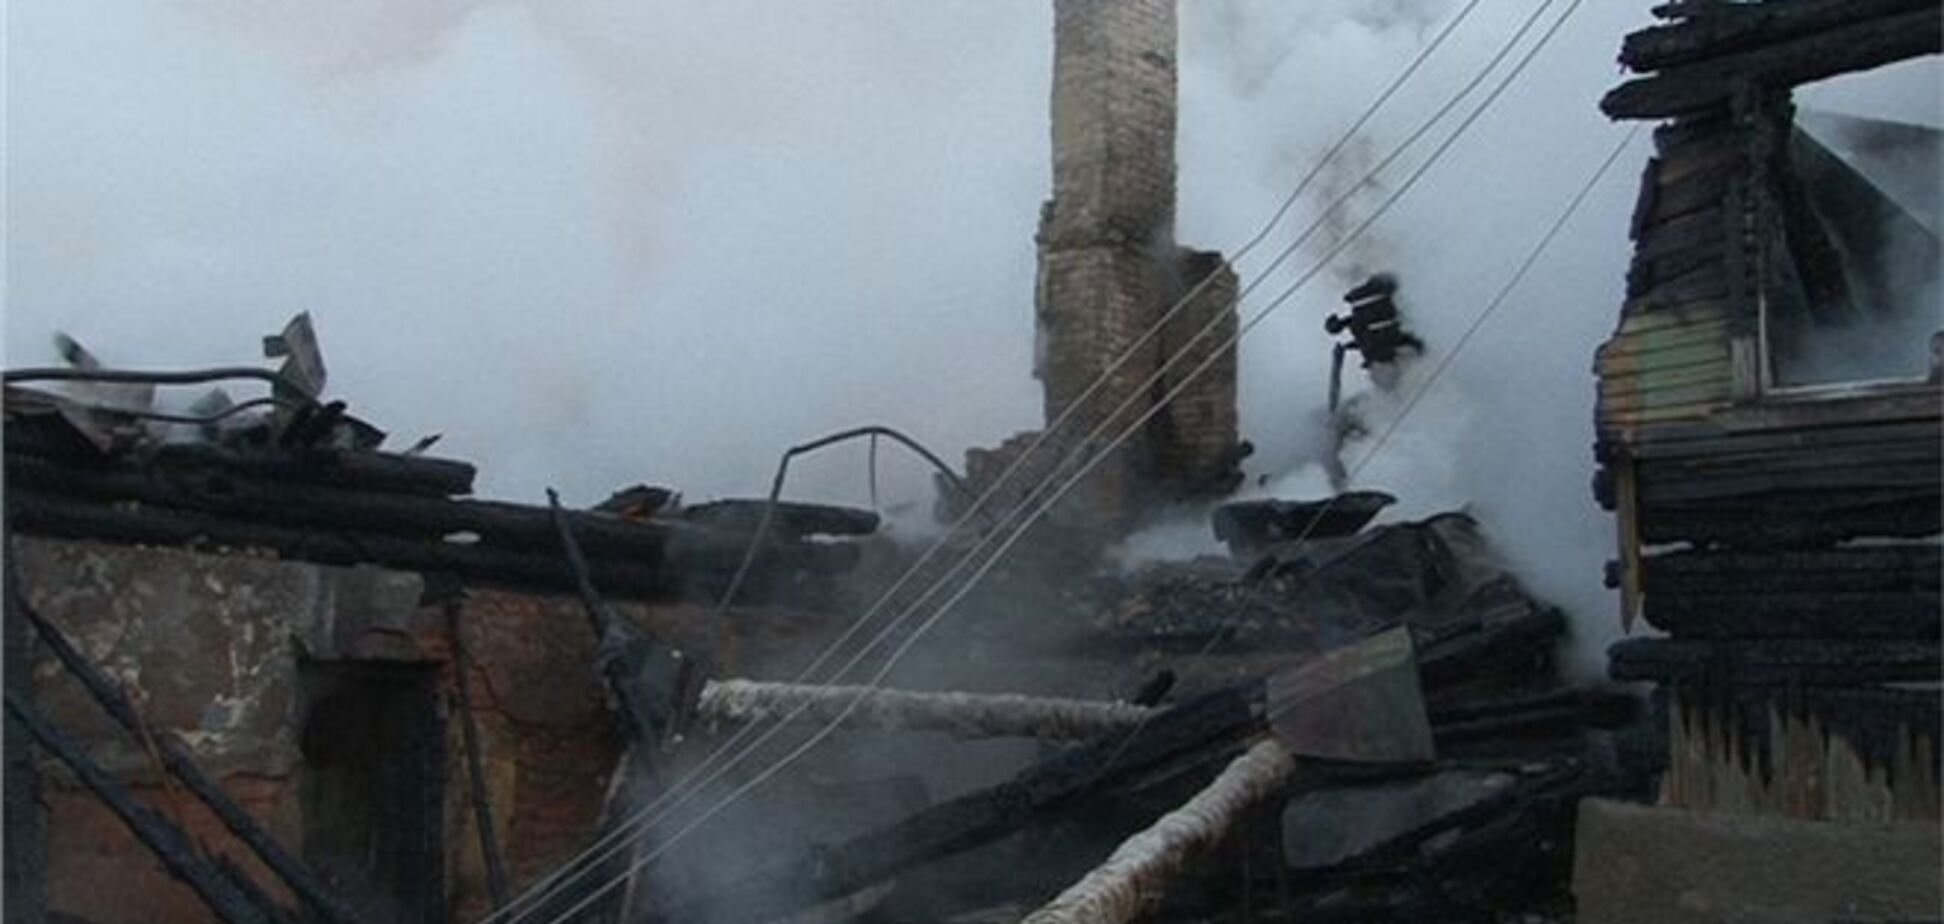 Траур по жертвам пожара объявлен в Новгородской области России 16 сентября